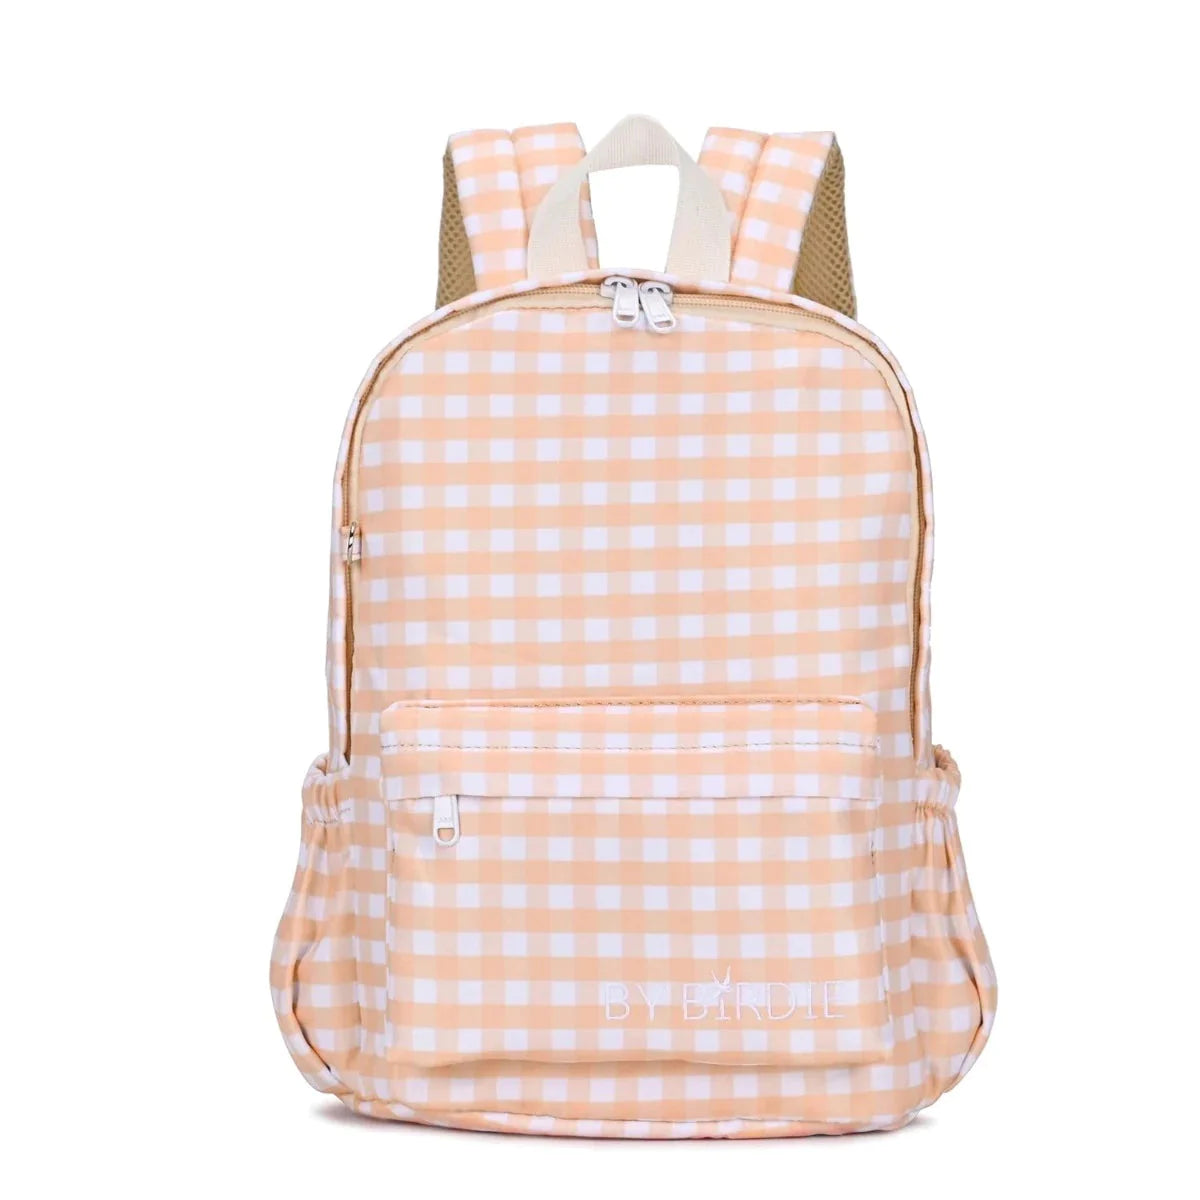 Kinnder - Pink Gingham Backpack (Large)